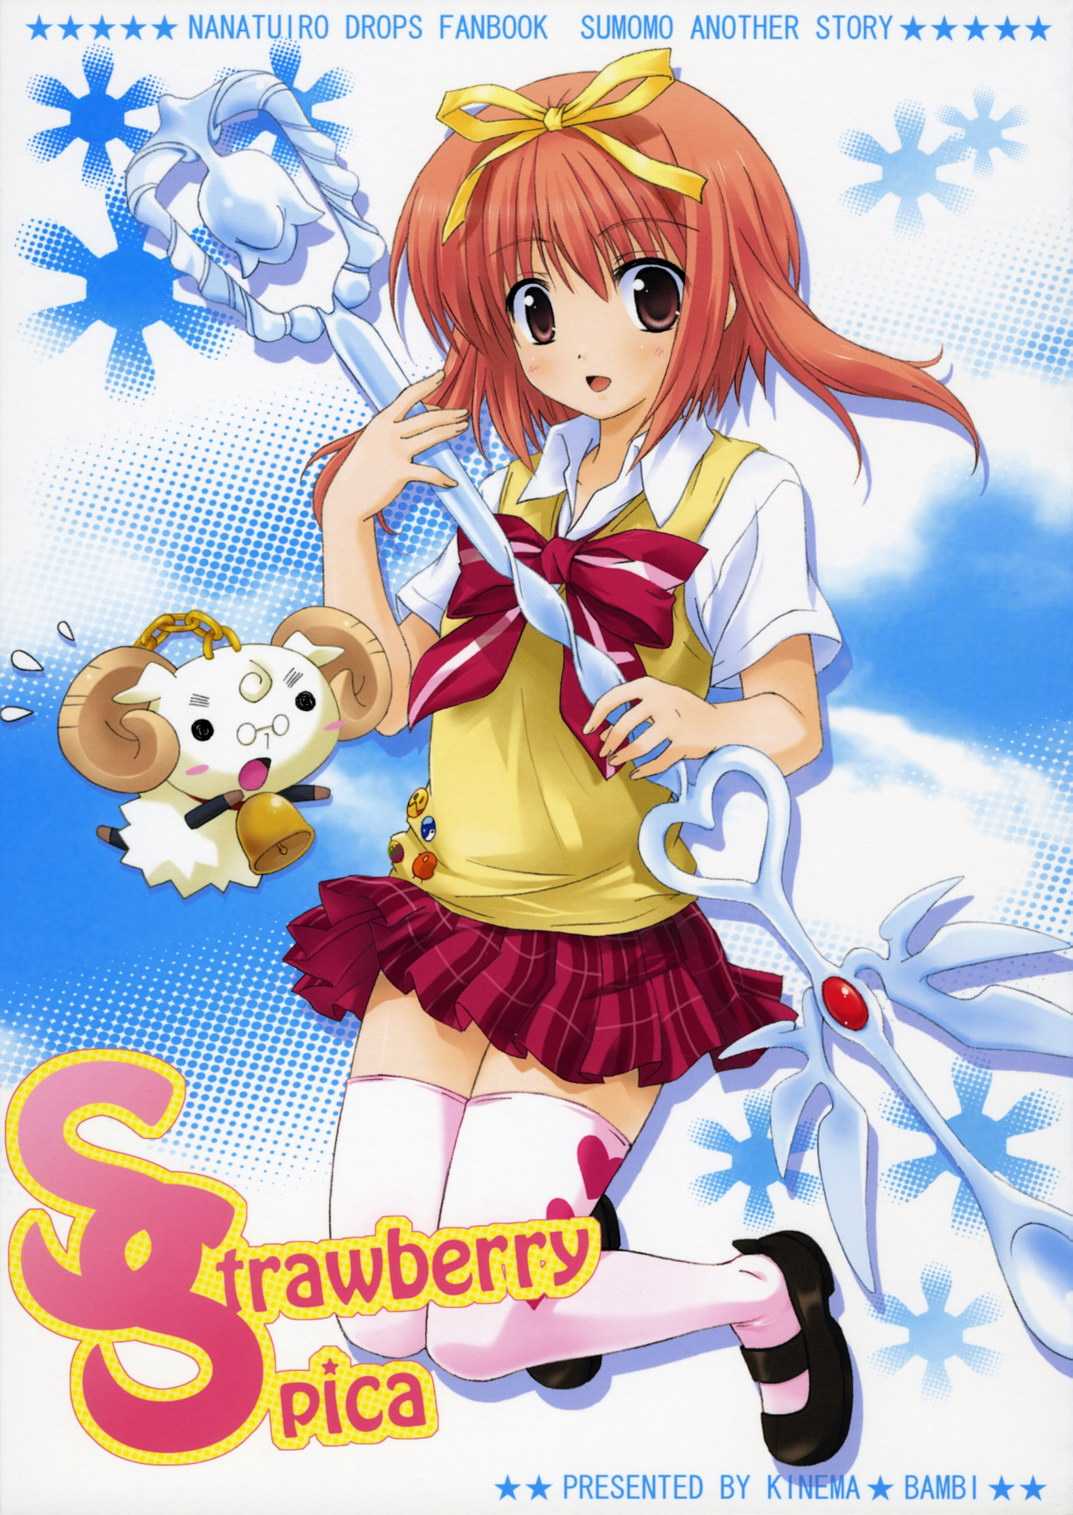 [kinema bambi] Strawberry Spica (Nanatsuiro Drops){masterbloodfer} 